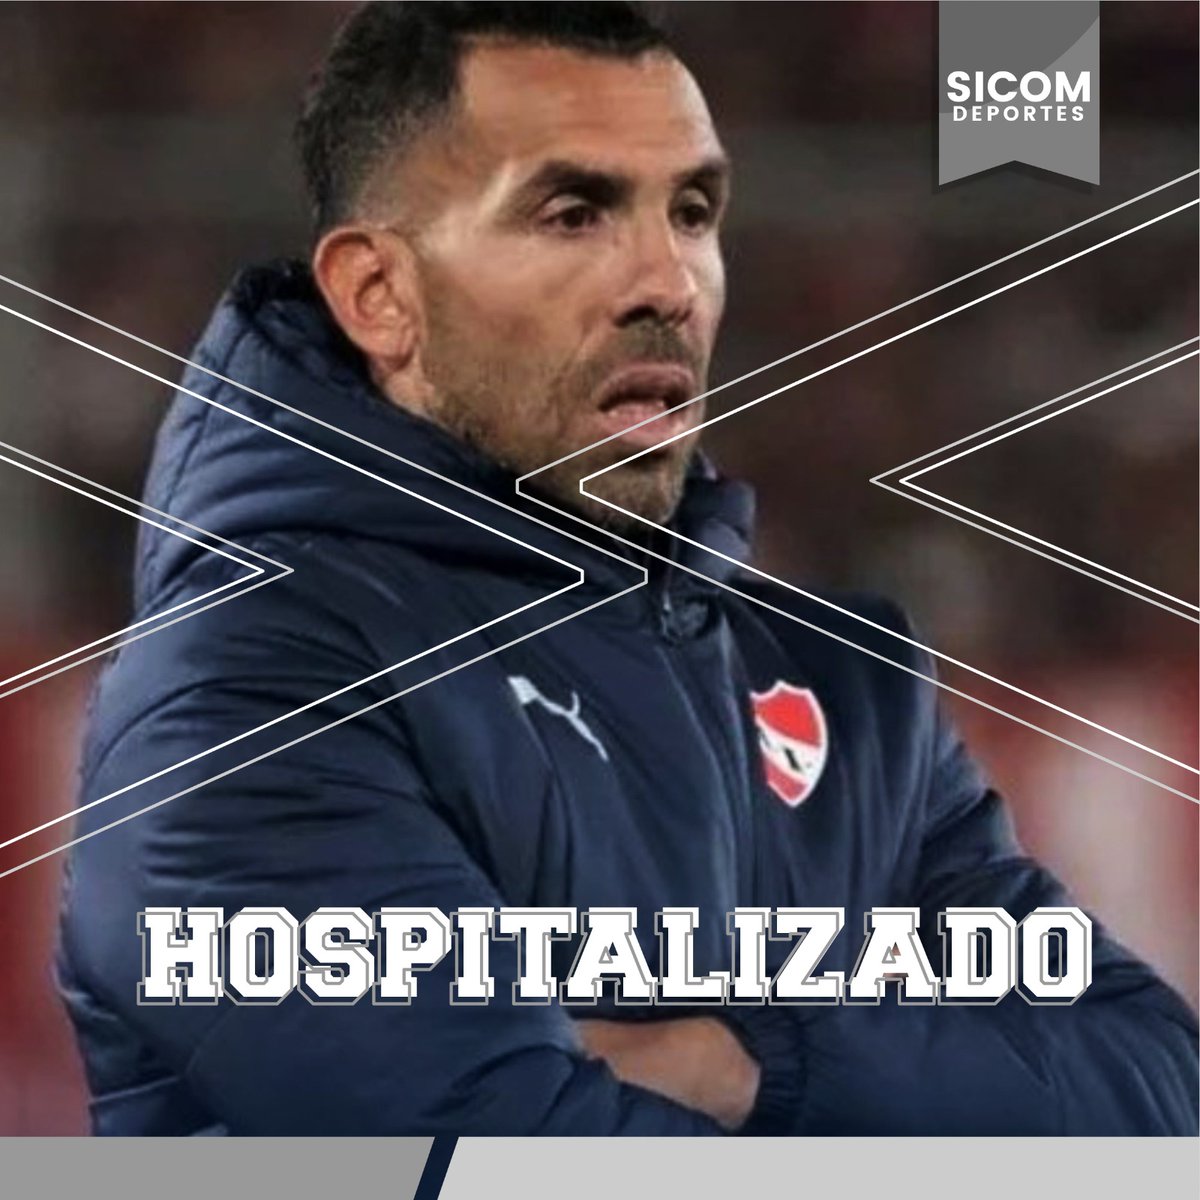 #SicomDeportes | 🚑🚨EL APACHE FUE HOSPITALIZADO🚨 Carlos Tevez se quedó internado y se sometió a exámenes médicos tras sufrir un fuerte dolor en el pecho, anunció Independiente. 🇦🇷